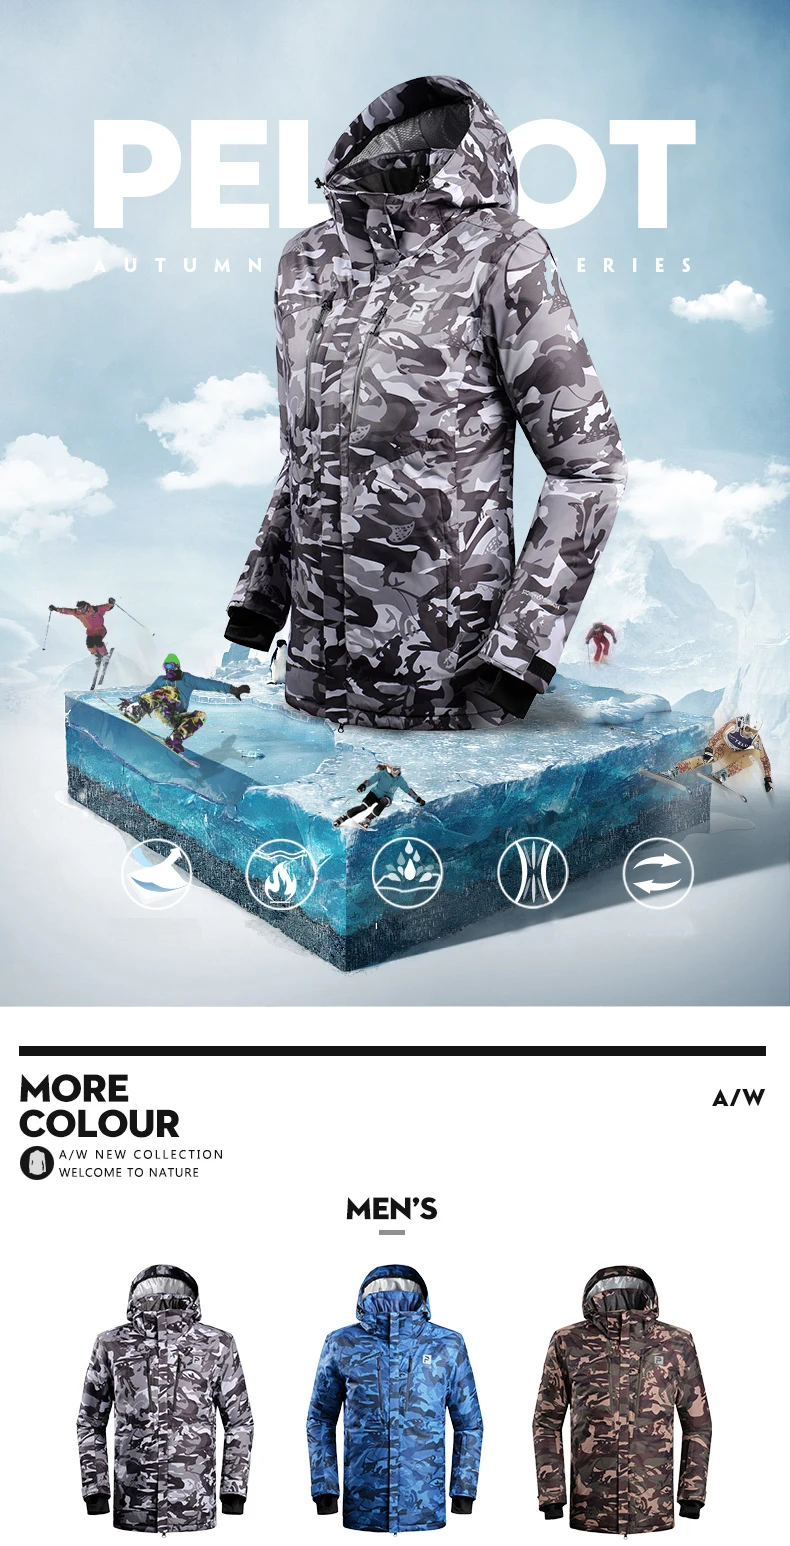 Pelliot французский лыжный костюм более аутентичный Открытый водонепроницаемый Зимний теплый дышащий двойной пластины Лыжная куртка и брюки